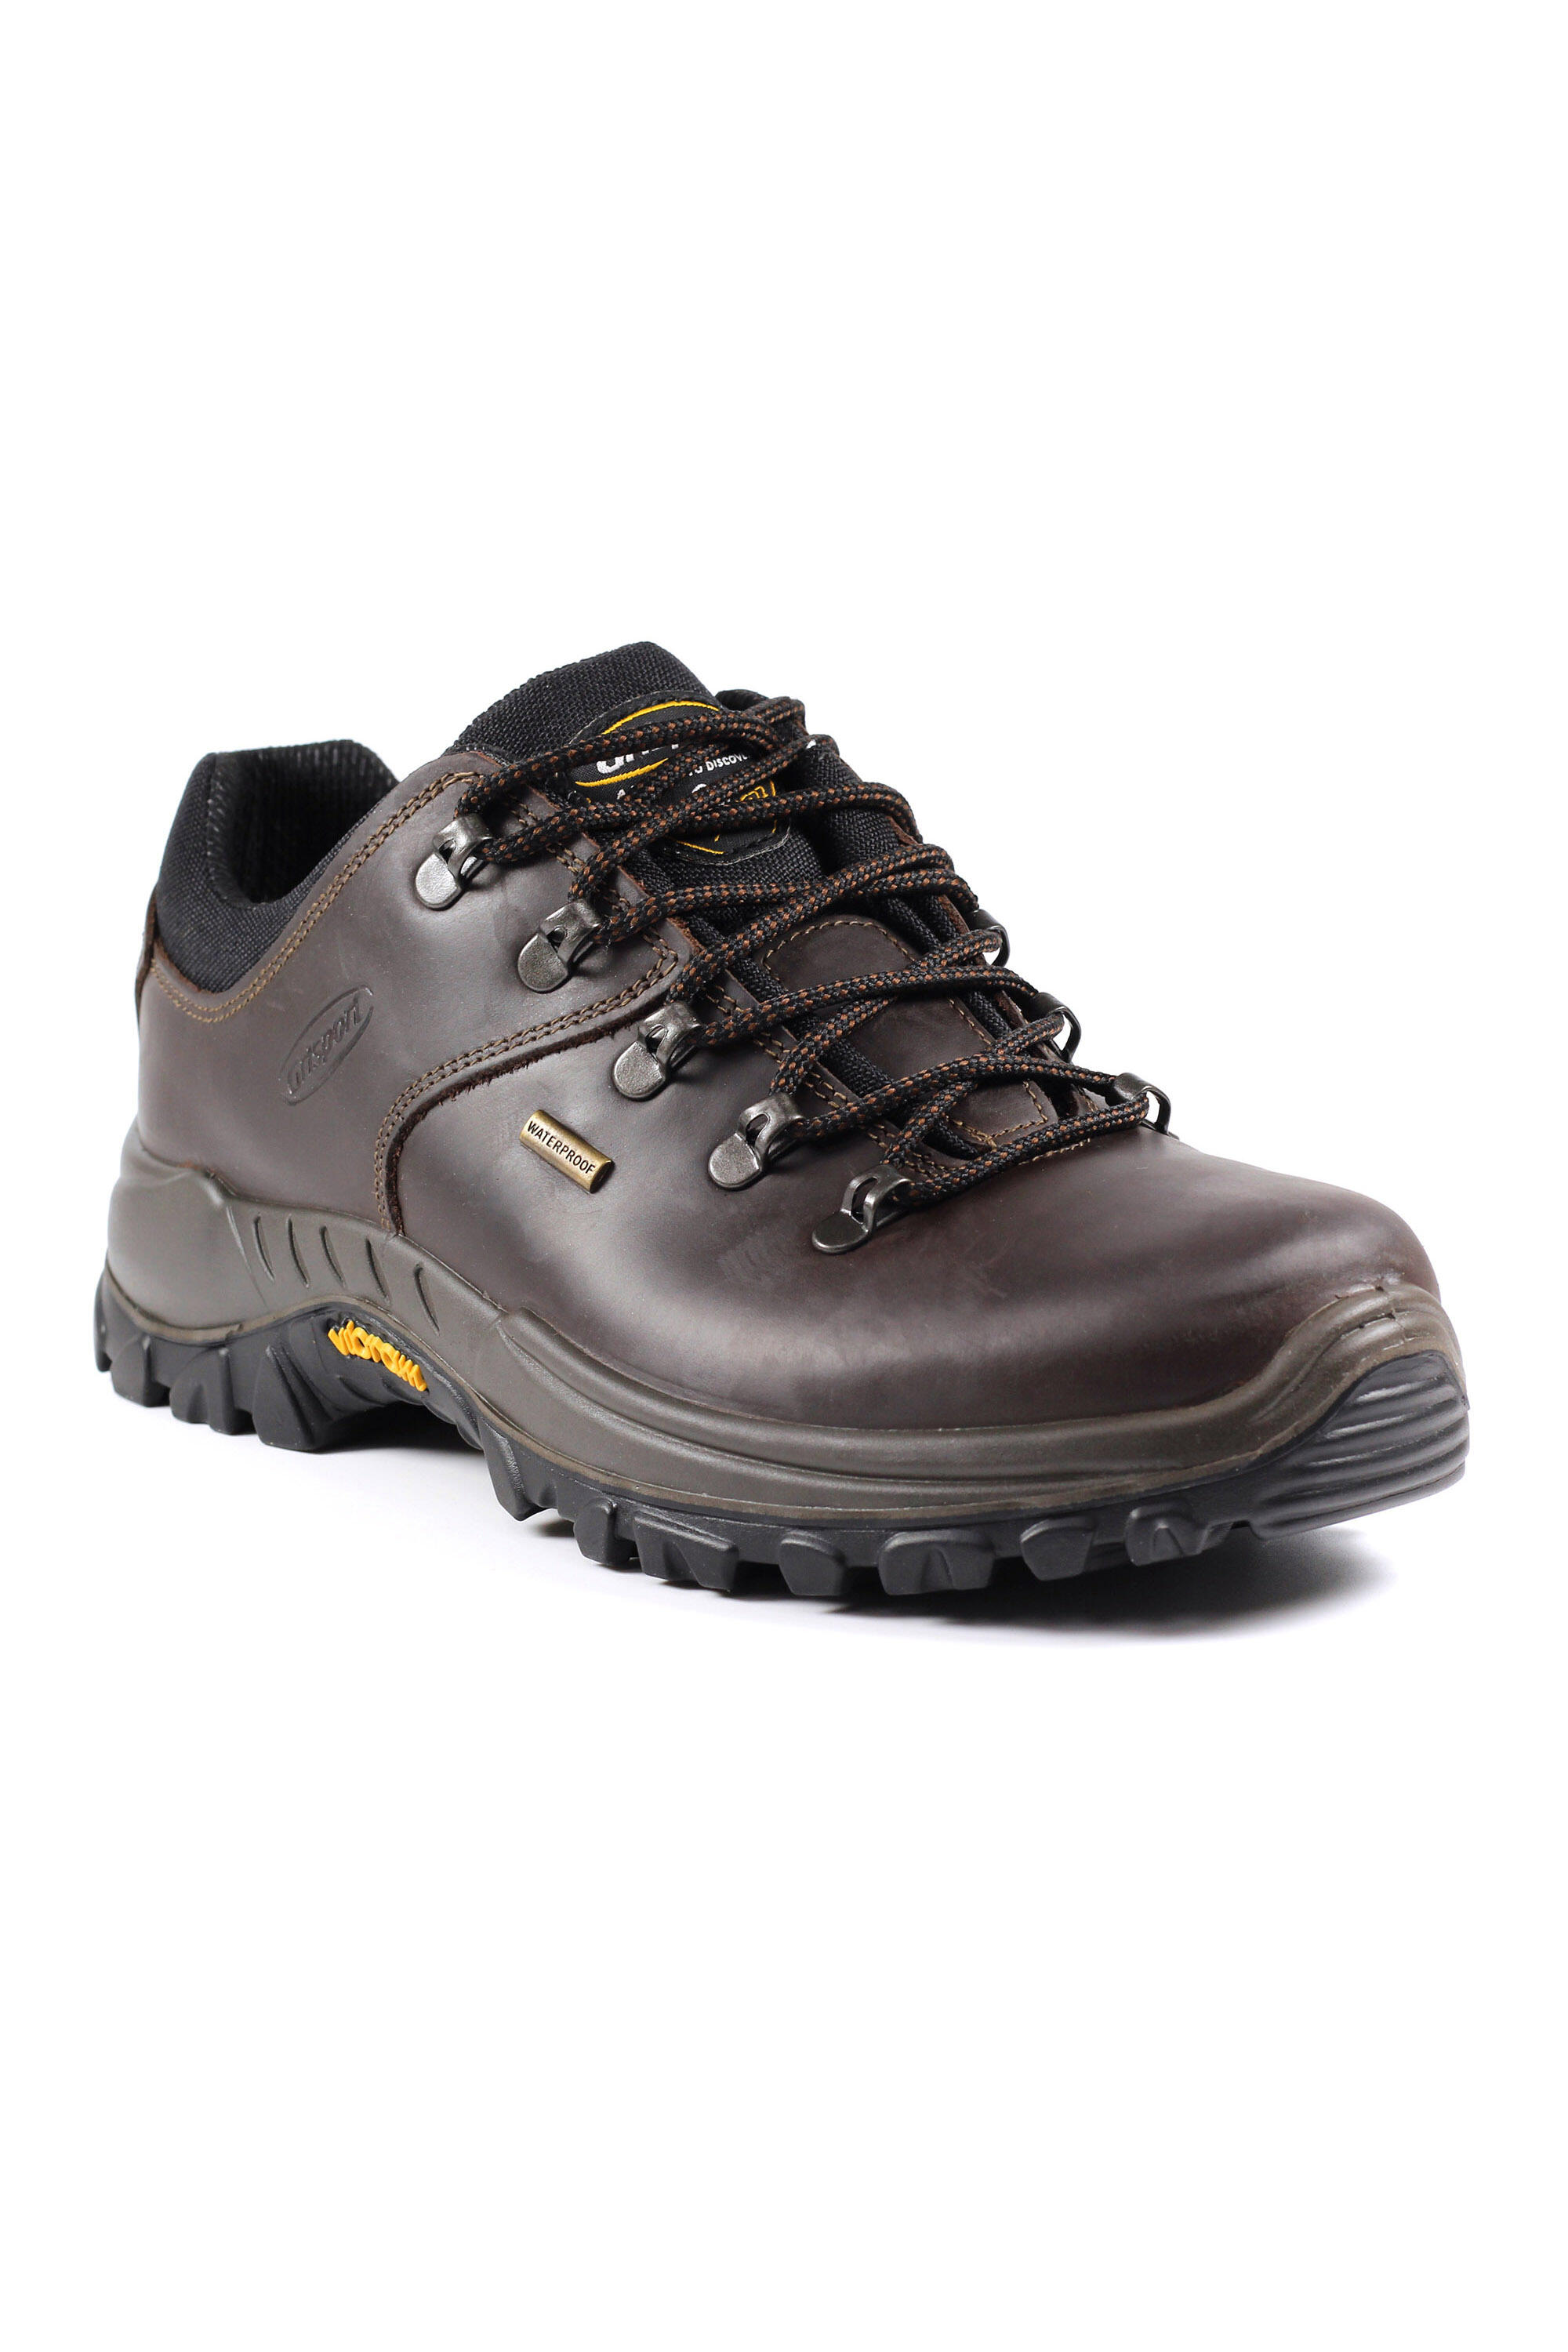 Dartmoor Brown Waterproof Walking Shoes 1/5